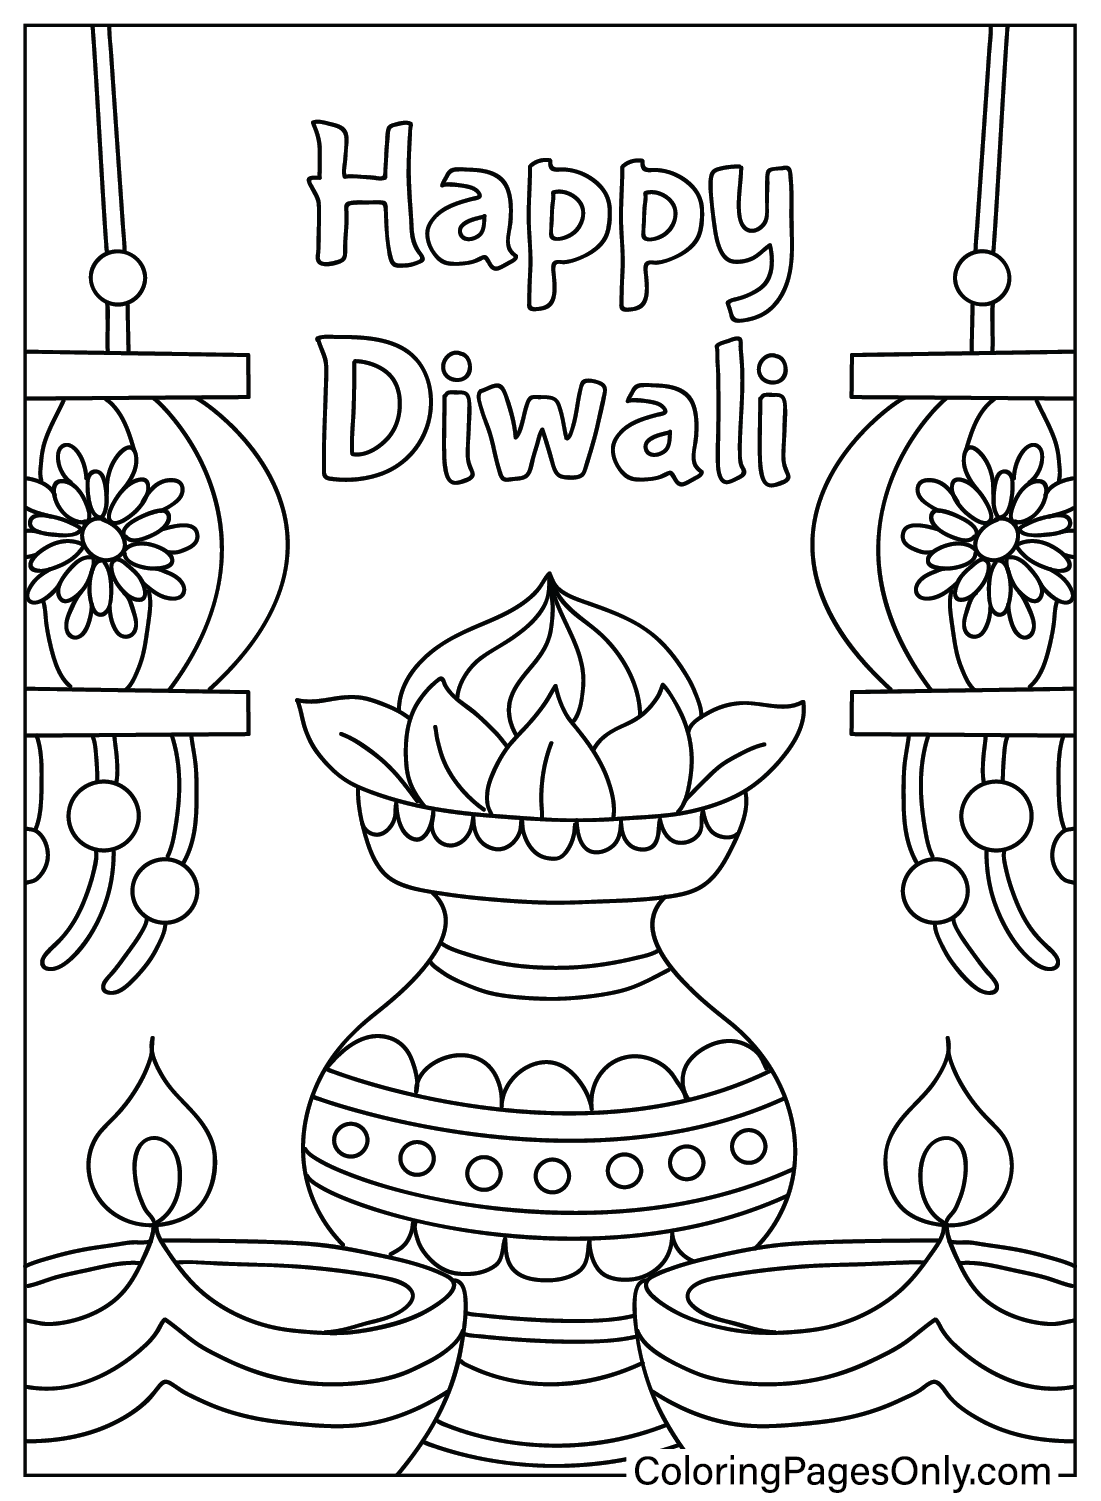 Diwali kleurplaat voor volwassenen van Diwali